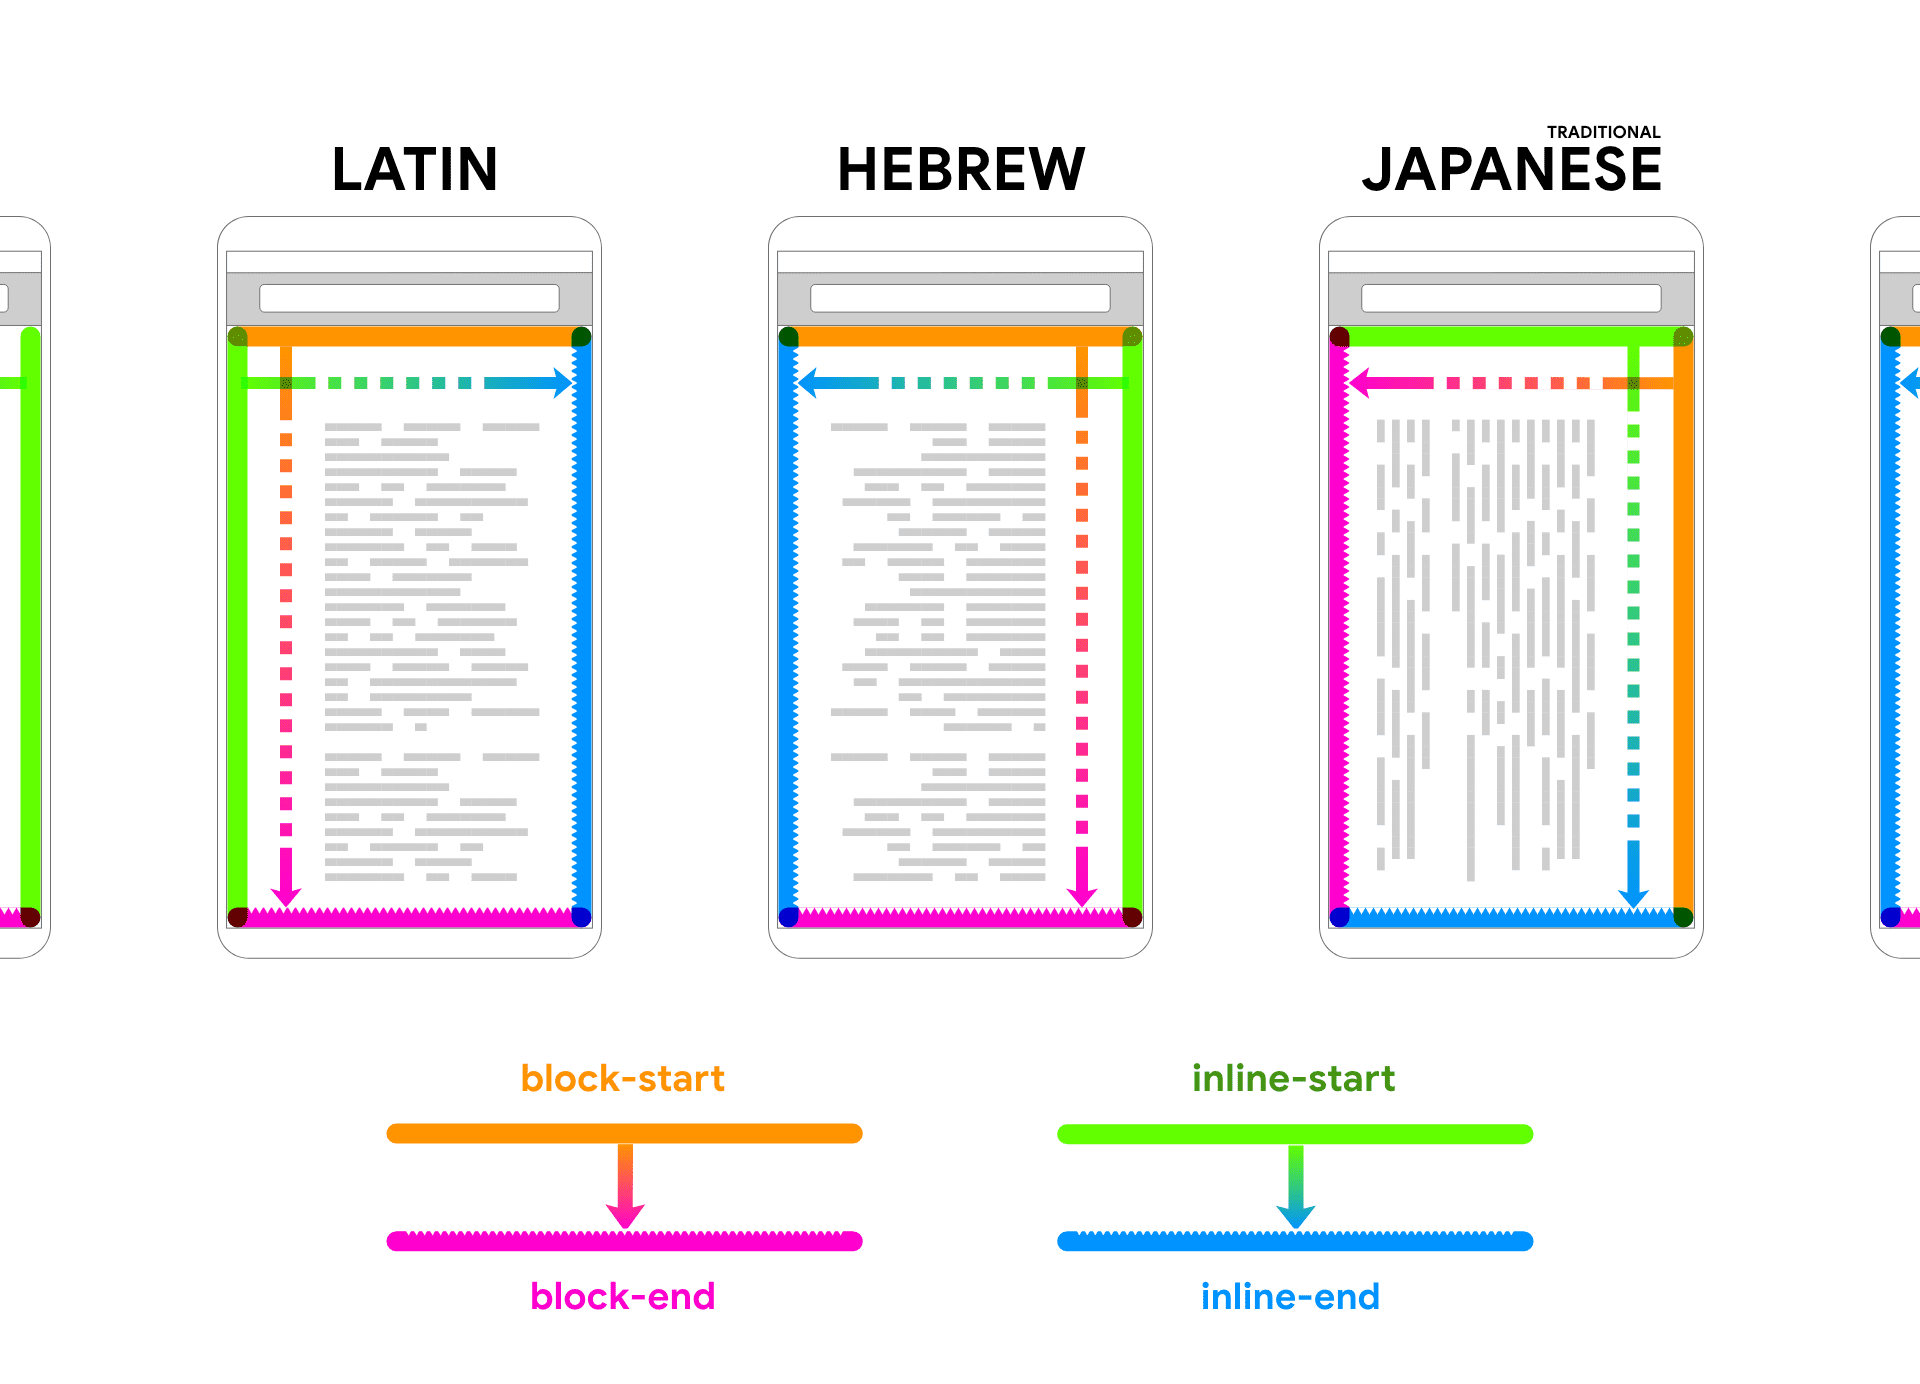 显示拉丁语、希伯来语和日语，在设备框架内呈现占位文本。文本后面有箭头和颜色，有助于将文本块和内嵌文本的 2 个方向关联起来。